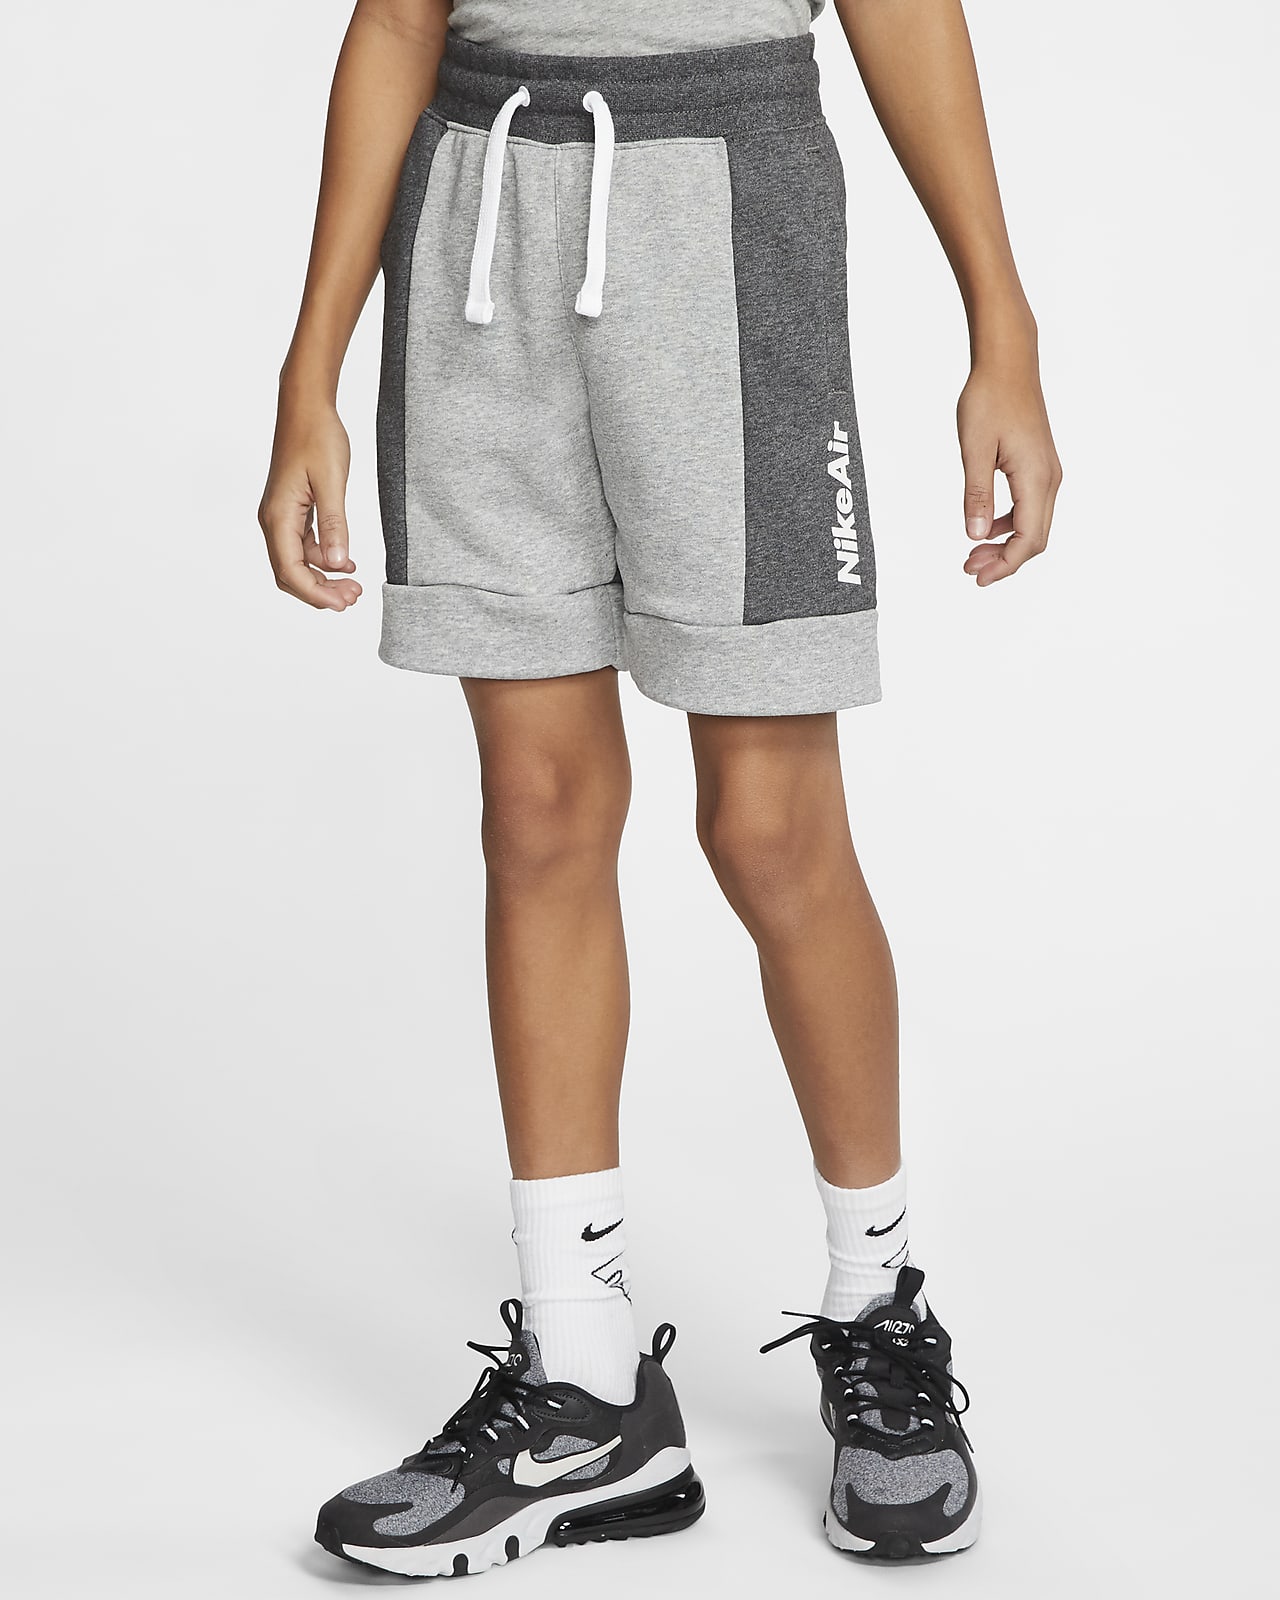 Nike Air Older Kids' (Boys') Shorts 